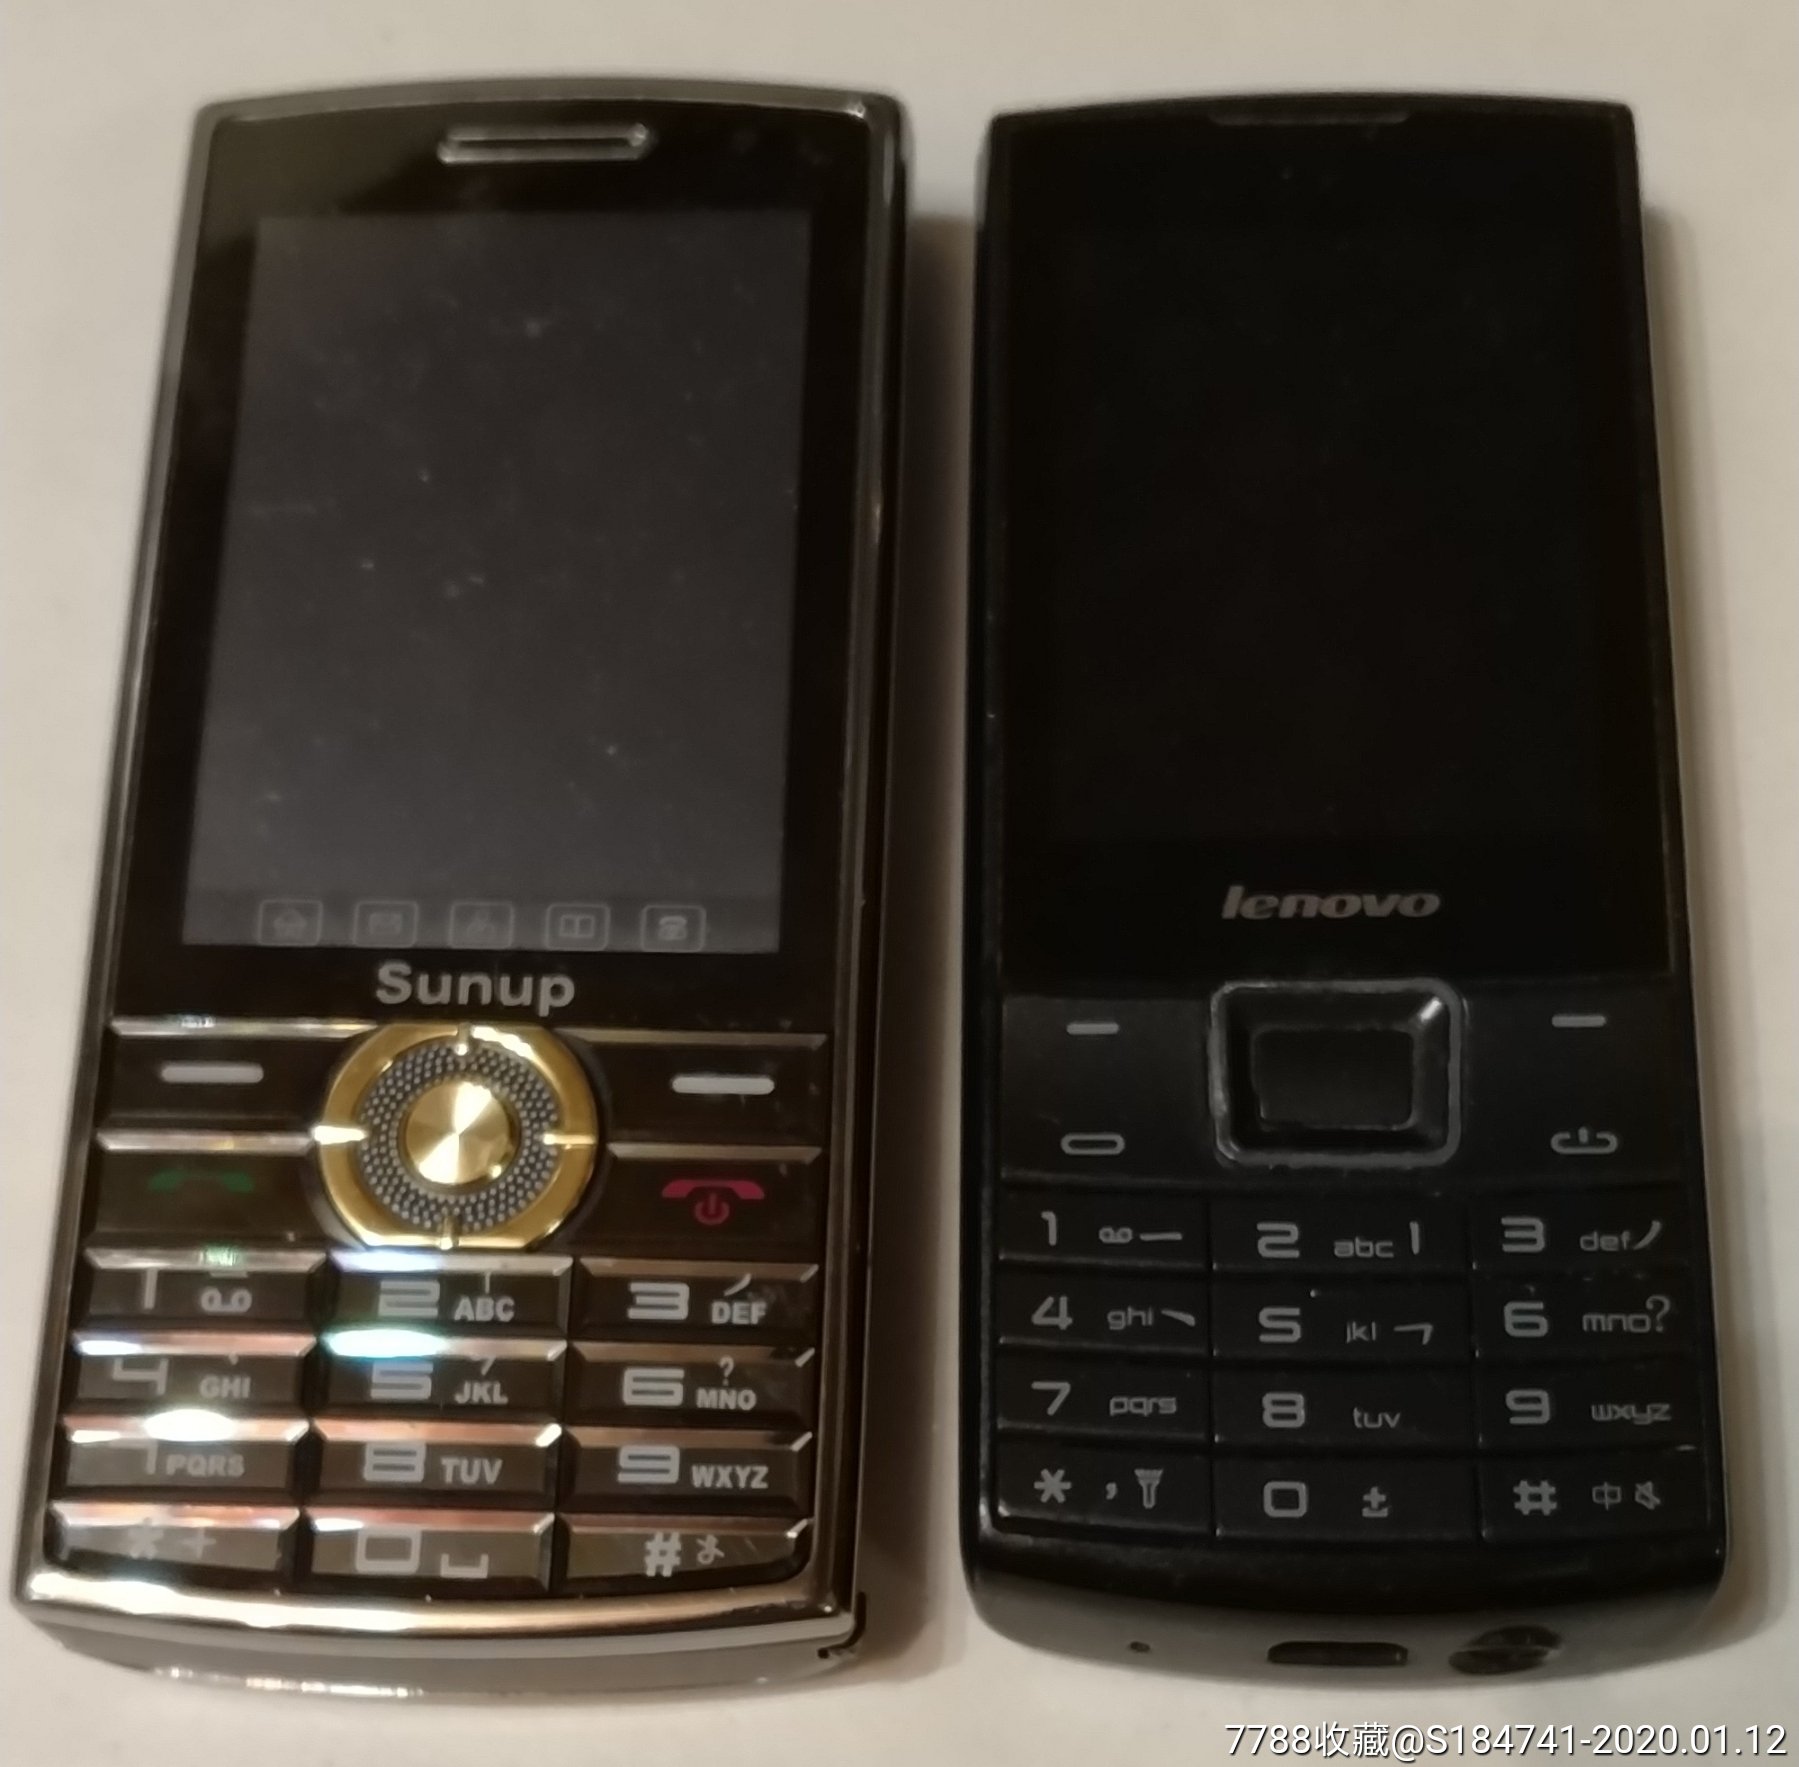 sunup--型号:8*0和联想手机型号:a180--2台一起卖